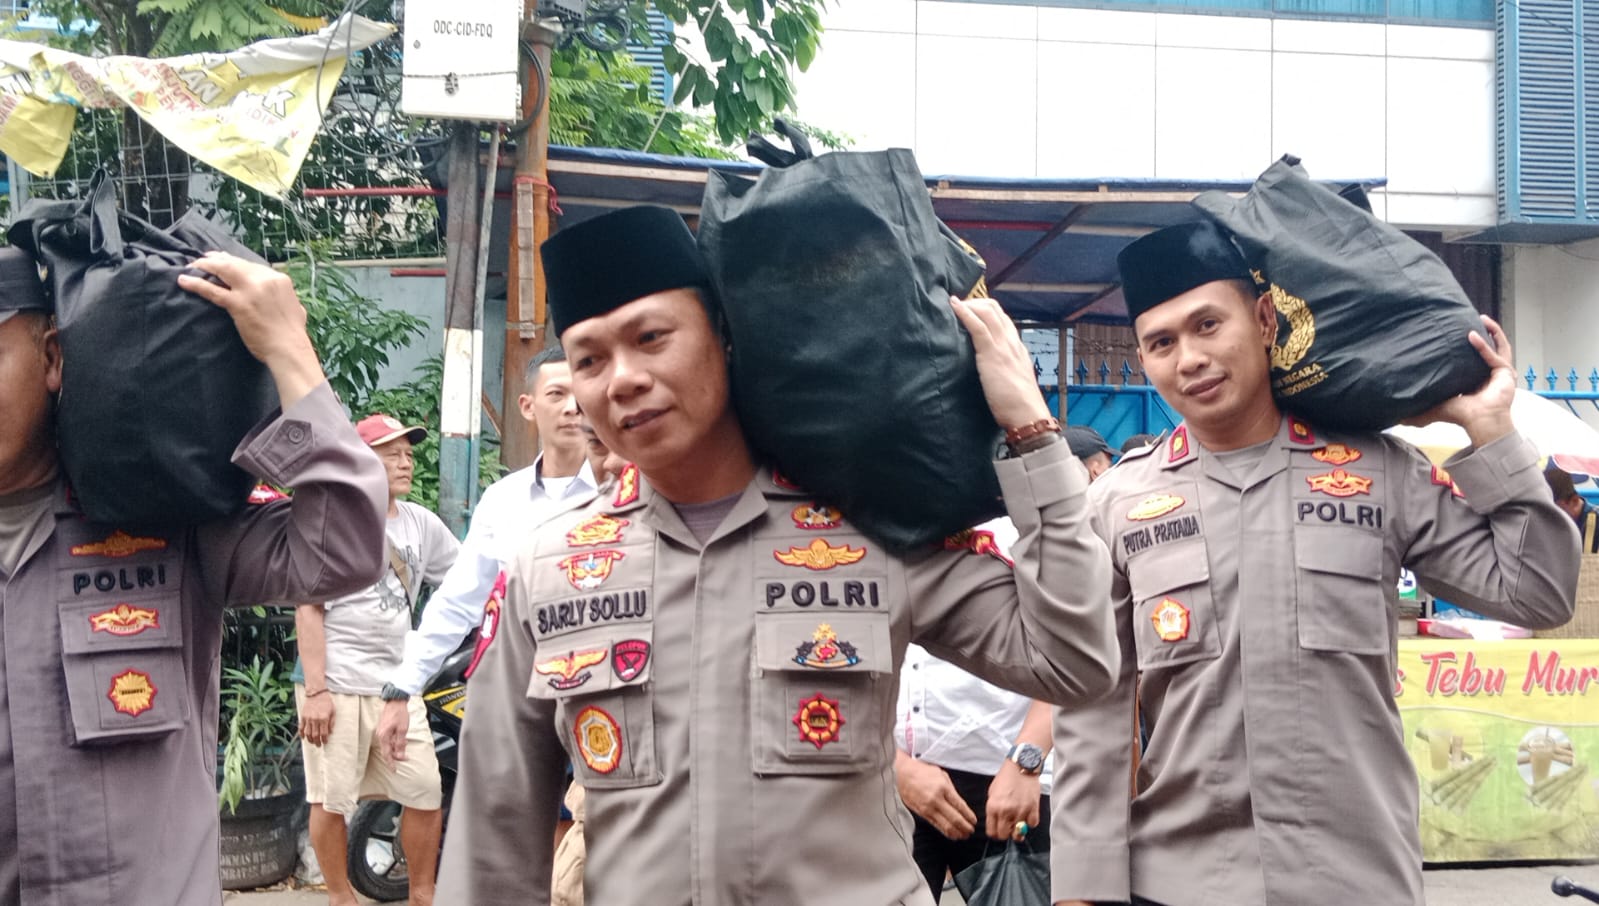 Wakapolres Jakarta Barat AKBP Sarly Sollu saat mendistribusikan bansos dari Kapolri (SinPo.id/ Humas Polri)